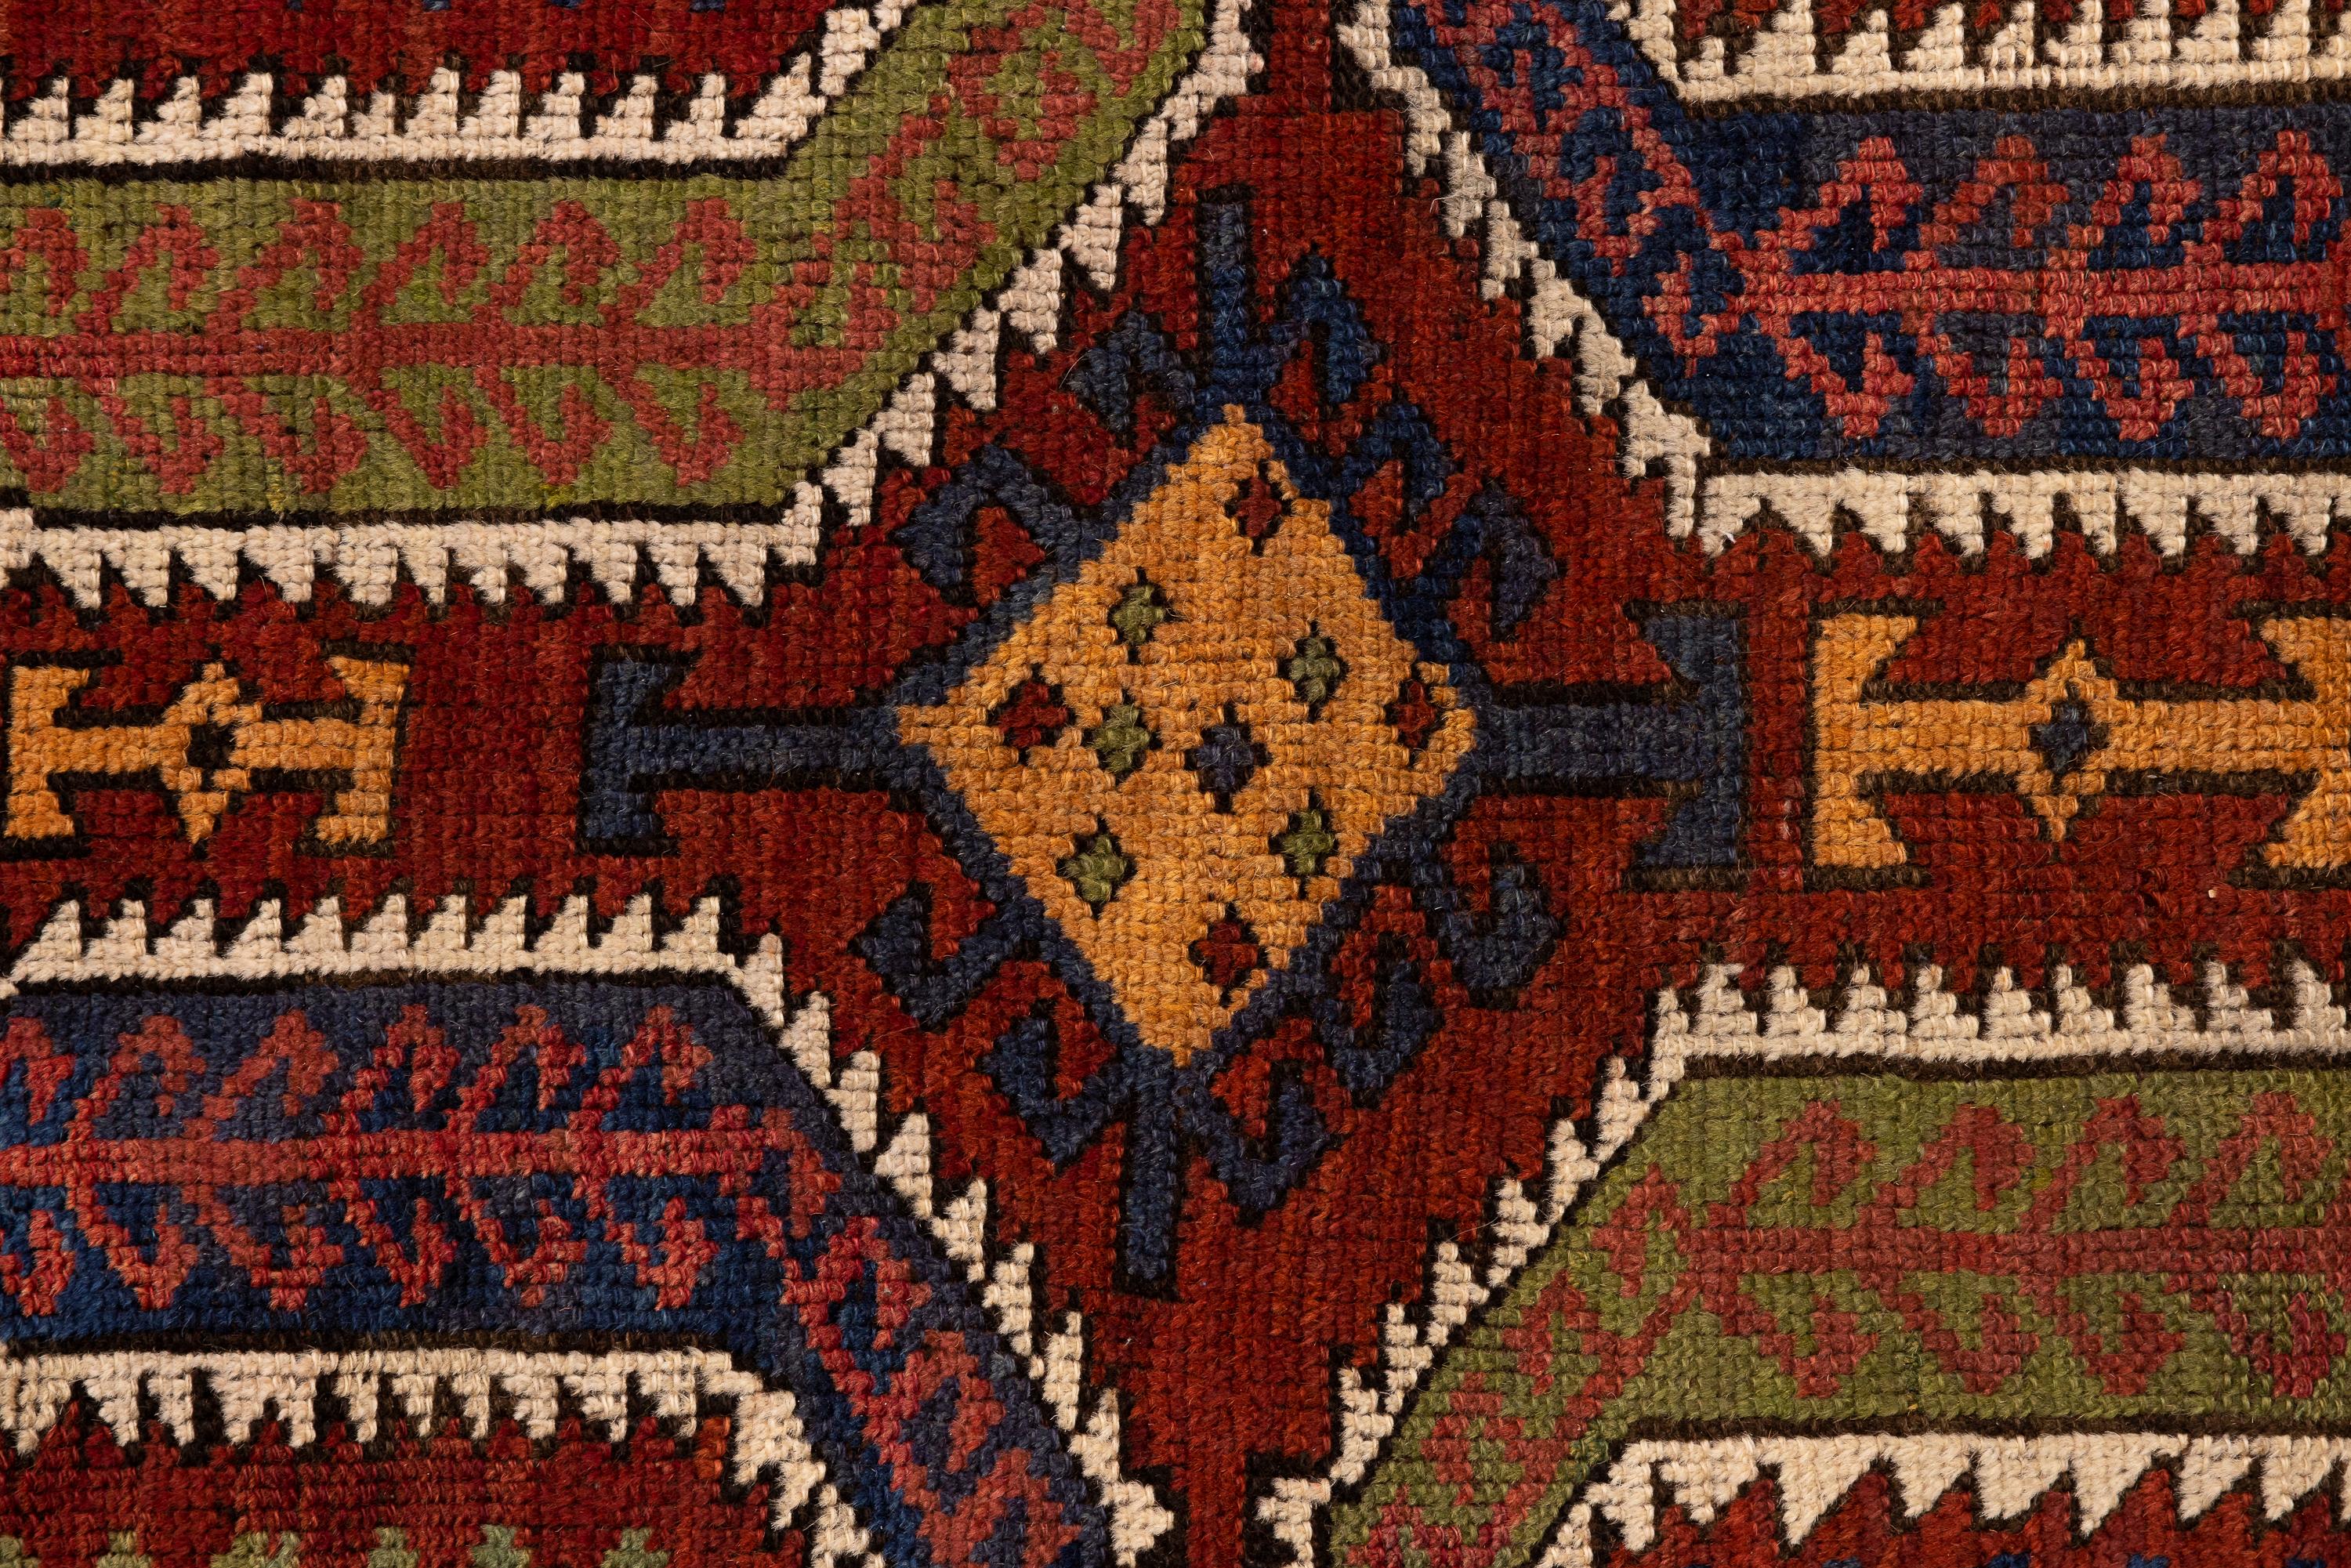 Konya - Anatolie centrale

Antique Konya Yastik avec des couleurs solides et vibrantes. Le tapis présente un design complexe avec des motifs géométriques légèrement asymétriques. Les couleurs prédominantes sont le rouge terreux, le bleu, le jaune et